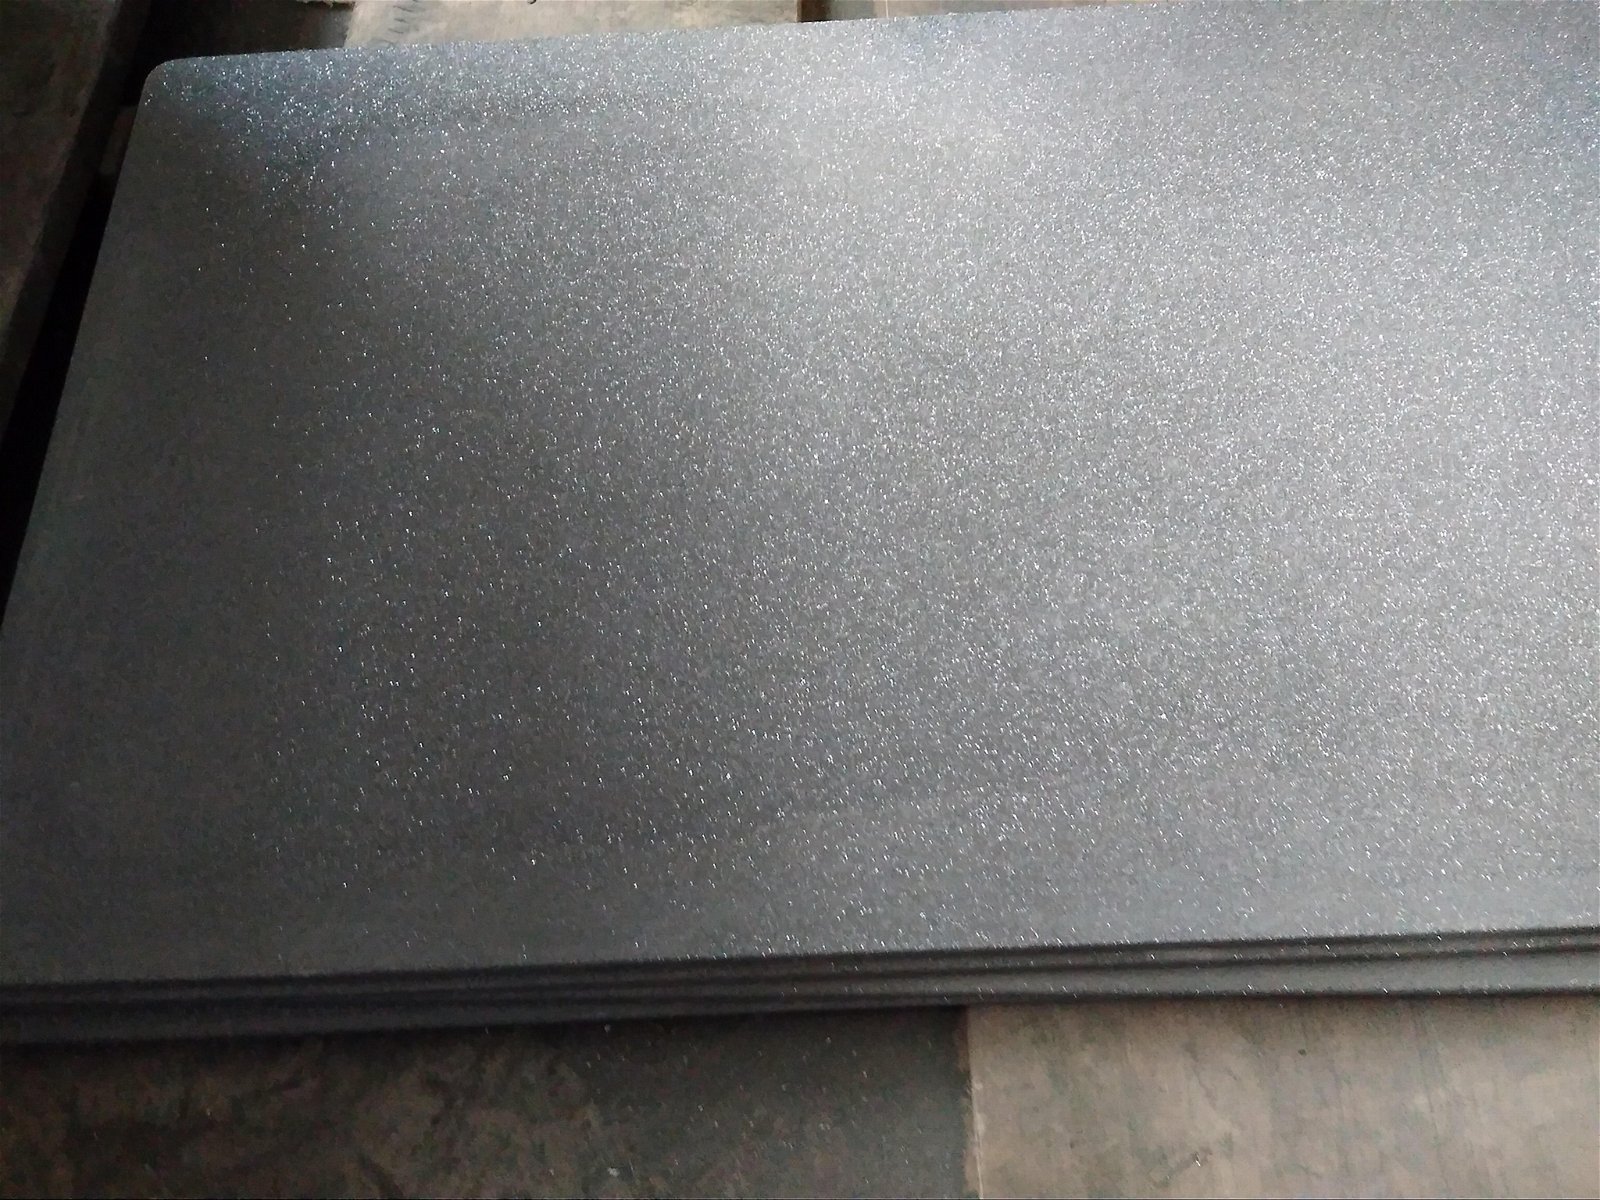 RSiC kiln shelves, recrystallized silicon carbide plates 3